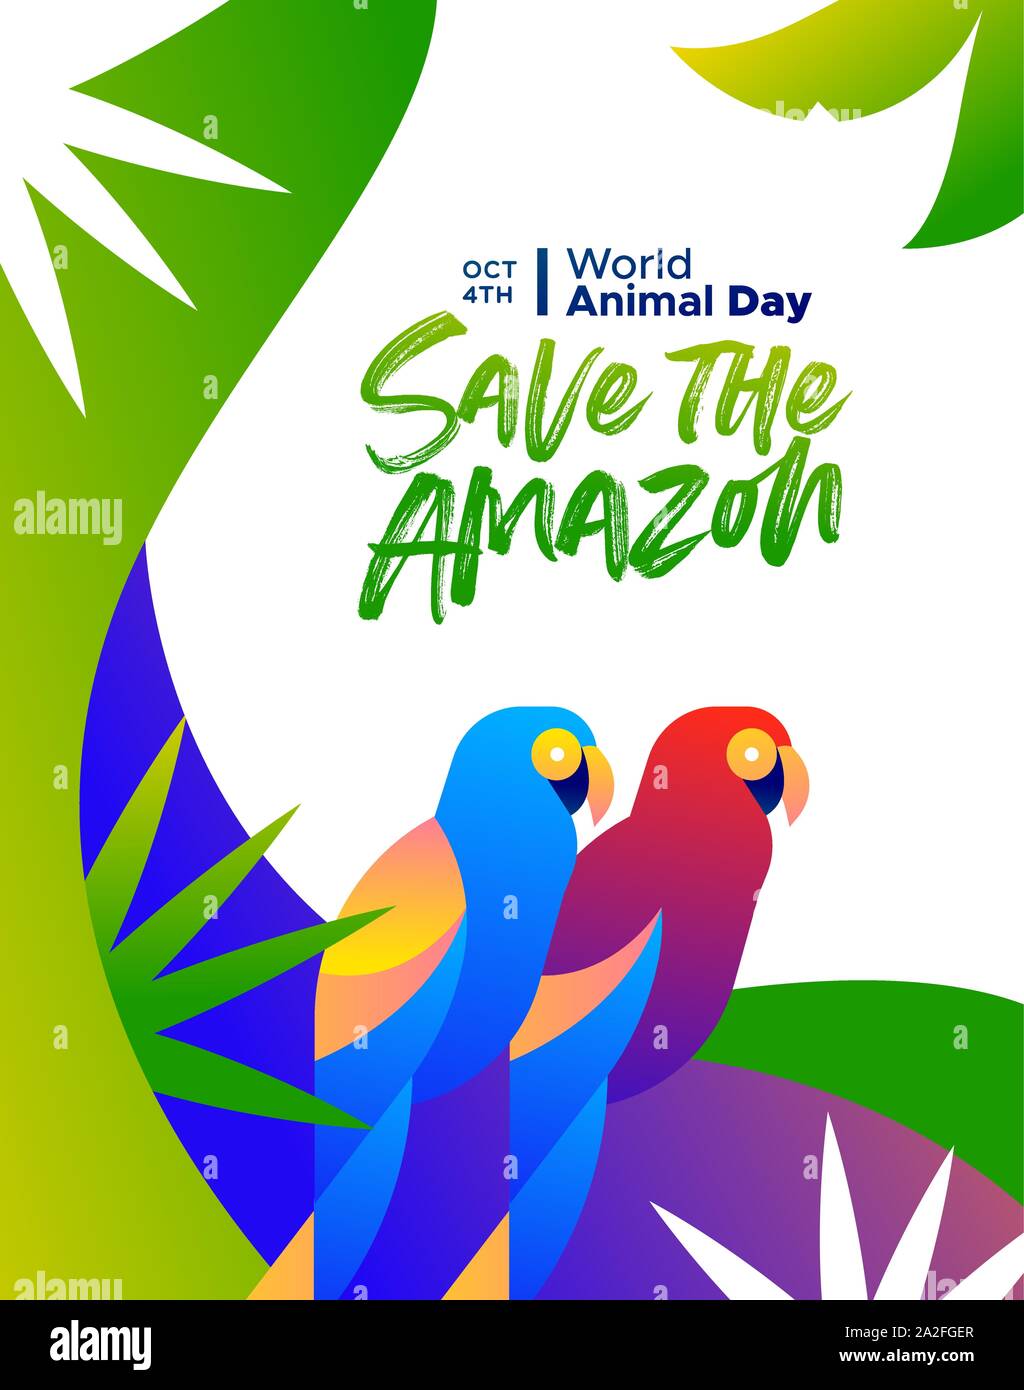 Speichern Sie die Amazon Illustration für Welt Tier Tag, Regenwald Abholzung Bewusstsein Konzept. Farbenfrohe brasilianische macaw Vögel in der modernen pulsierenden Flachbild g Stock Vektor